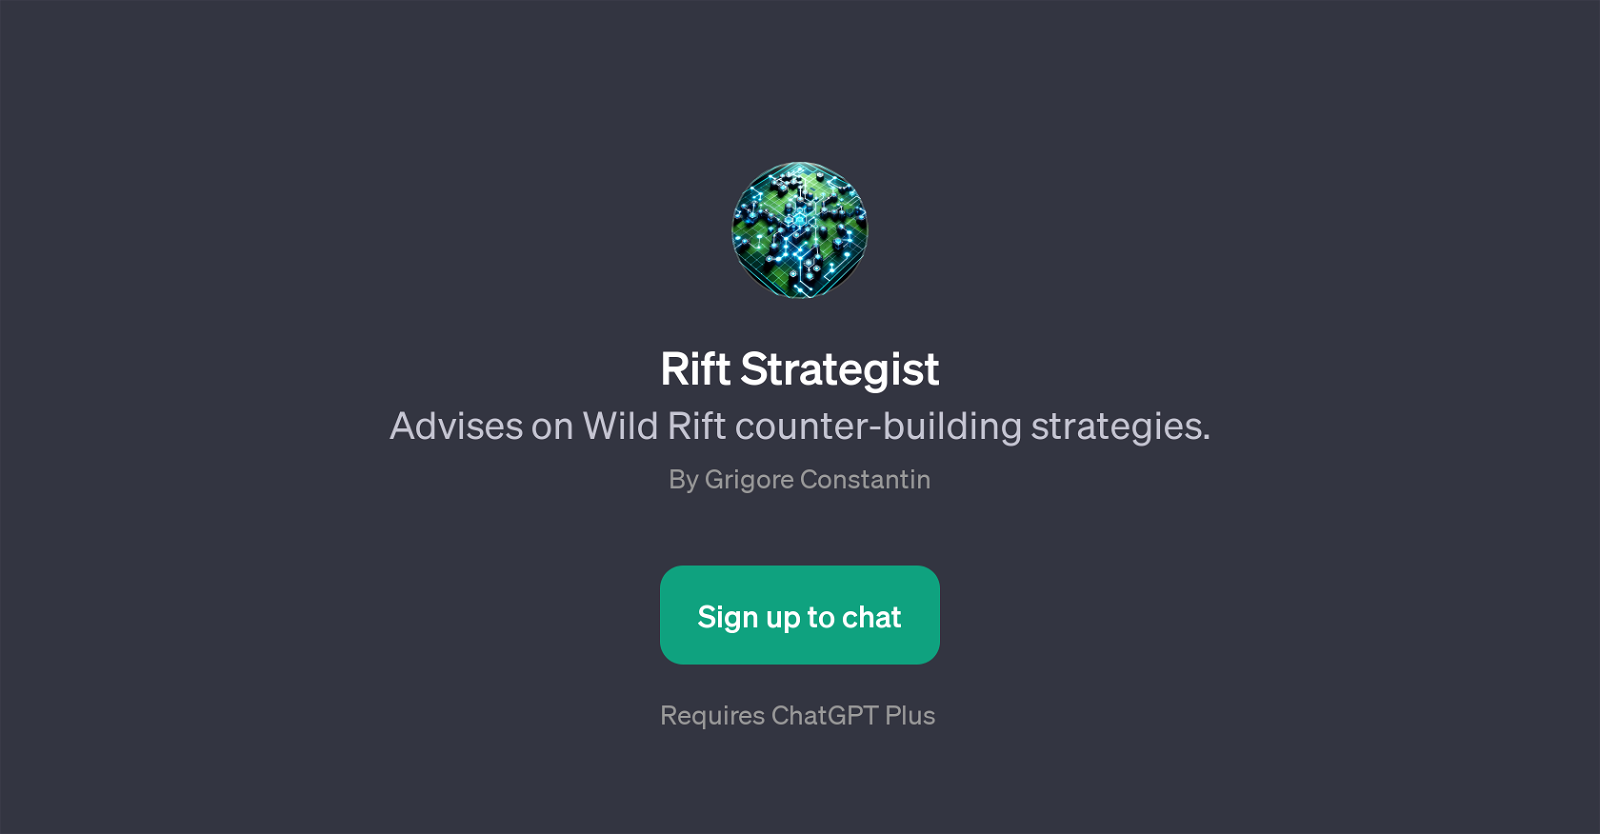 Rift Strategist website